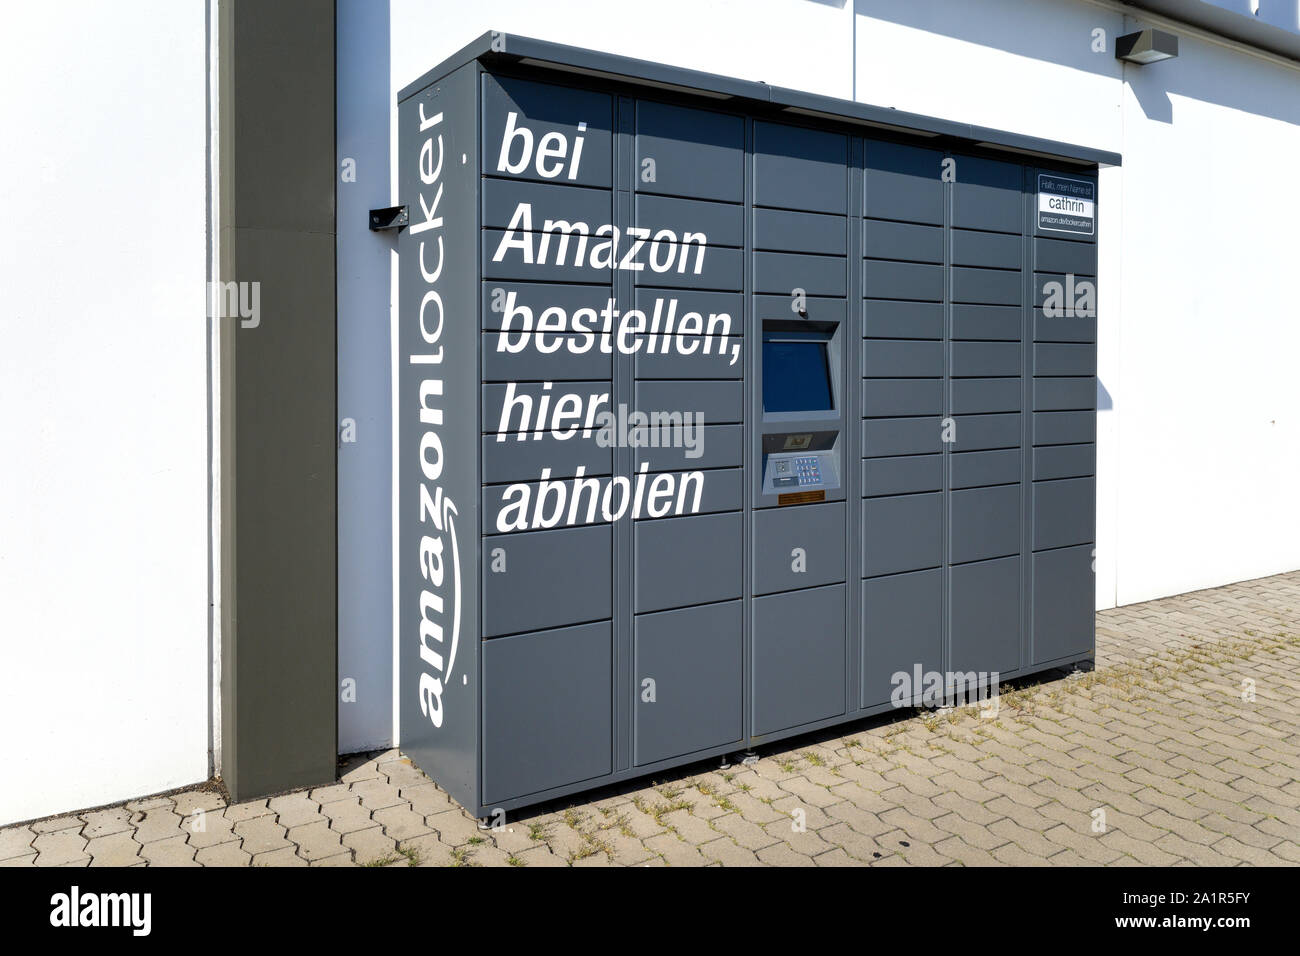 Amazon Locker, un self-service service de livraison de colis offerts par le détaillant en ligne Amazon. Banque D'Images